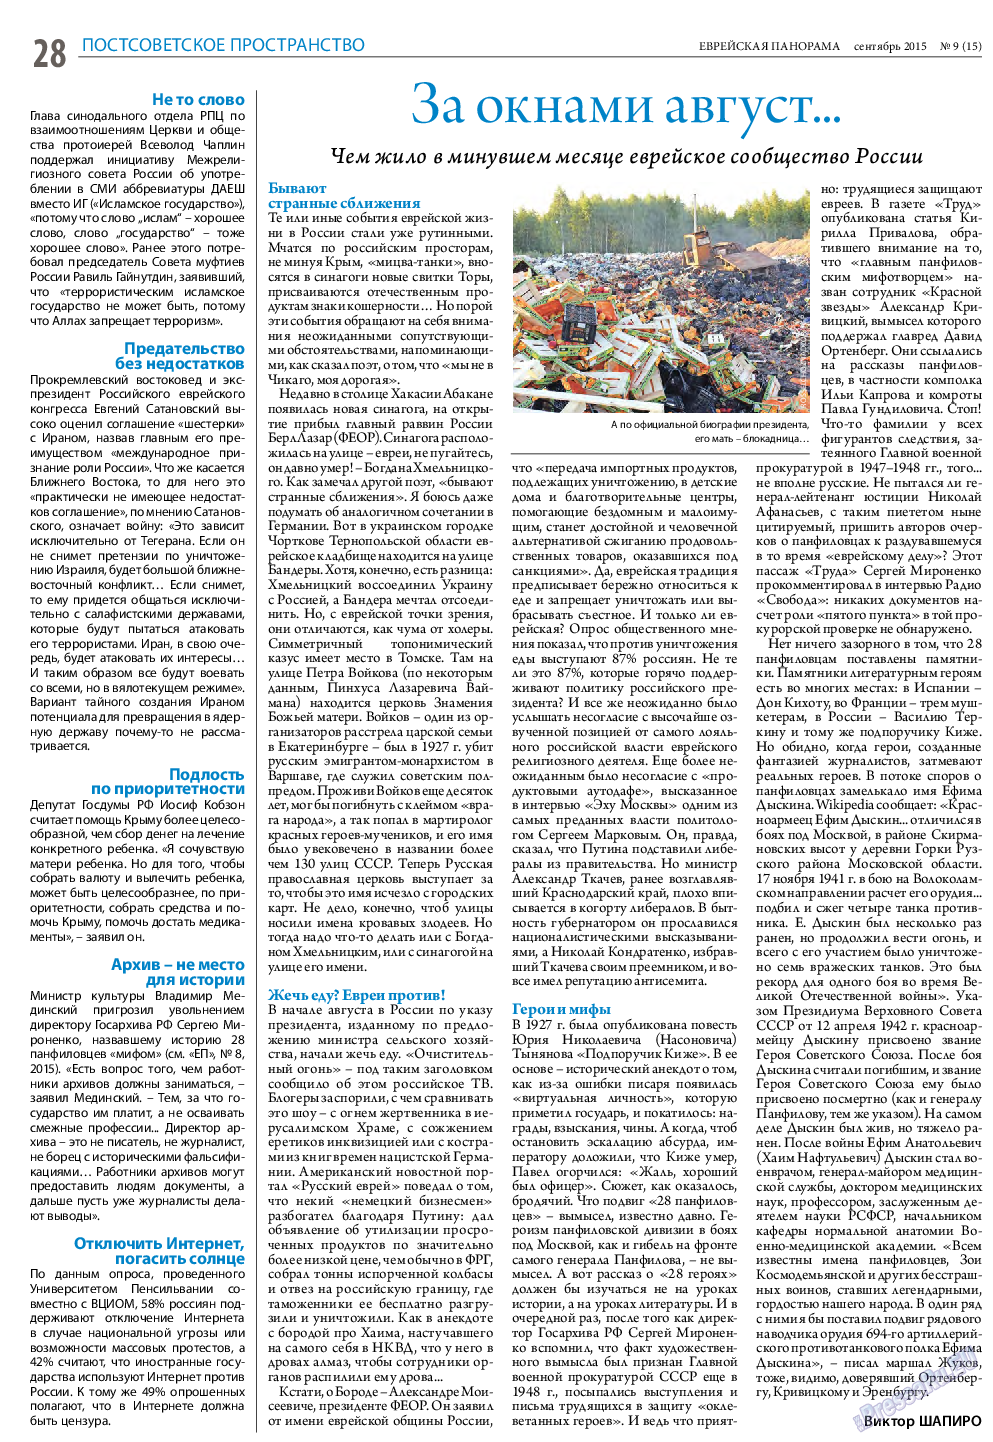 Еврейская панорама (газета). 2015 год, номер 9, стр. 28